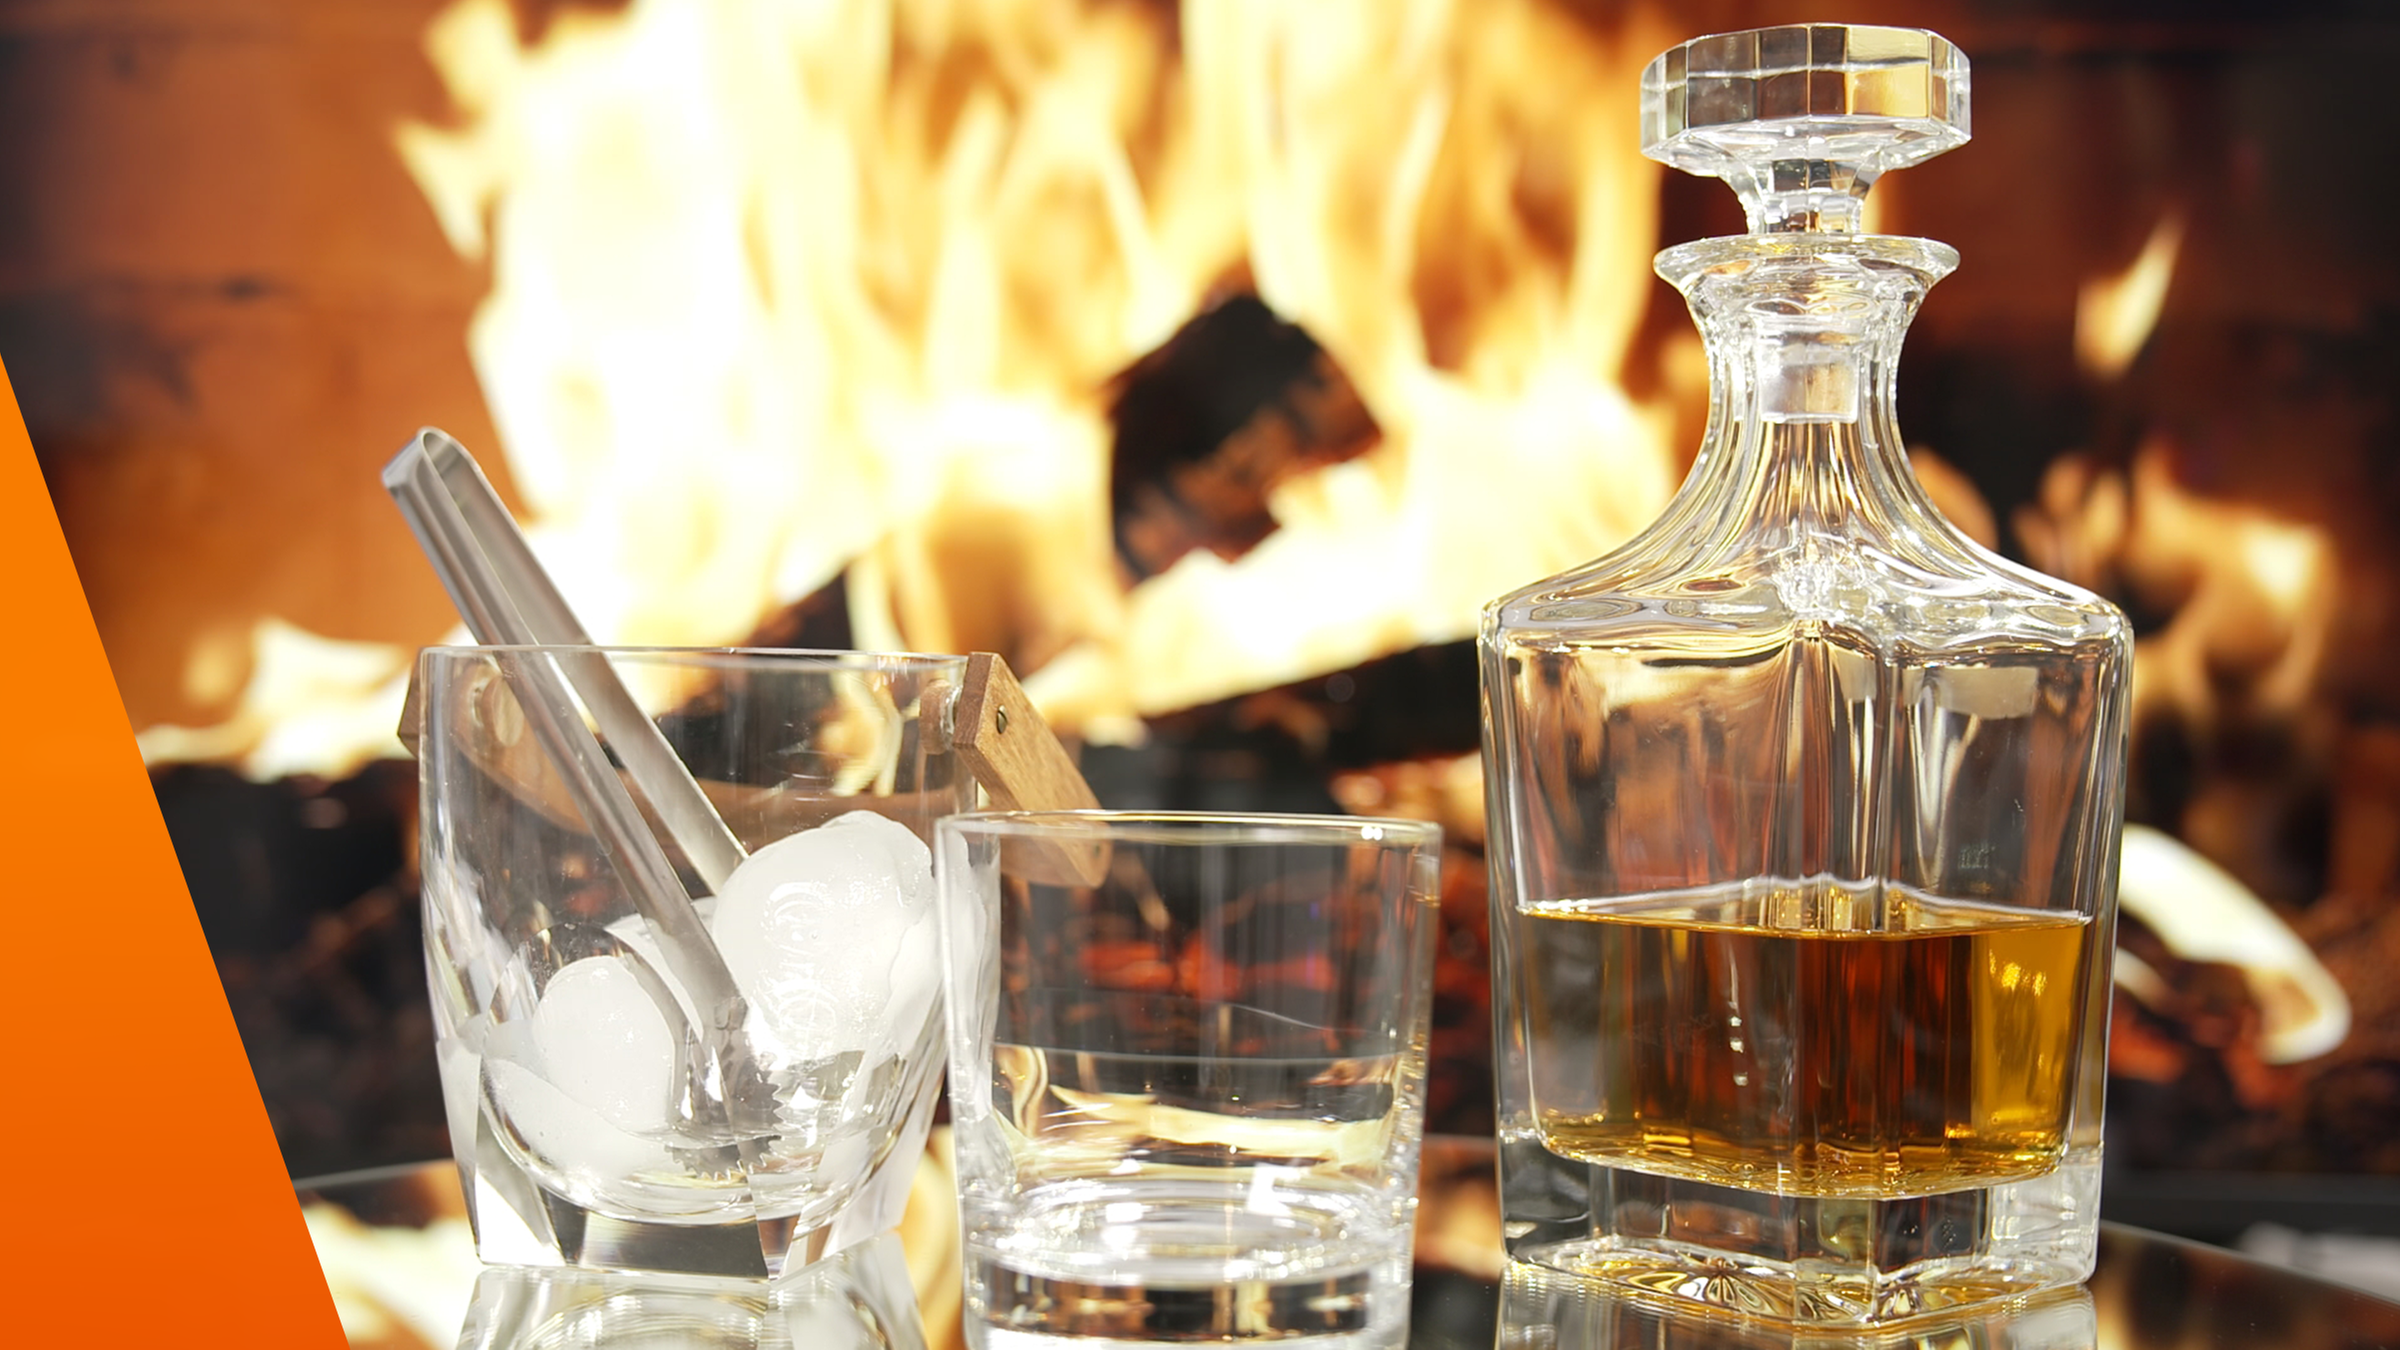 Whiskey in Karaffe mit zwei Gläsern. In einem Glas sind Eiswürfel. Im Hintergrund lodert ein Kaminfeuer.